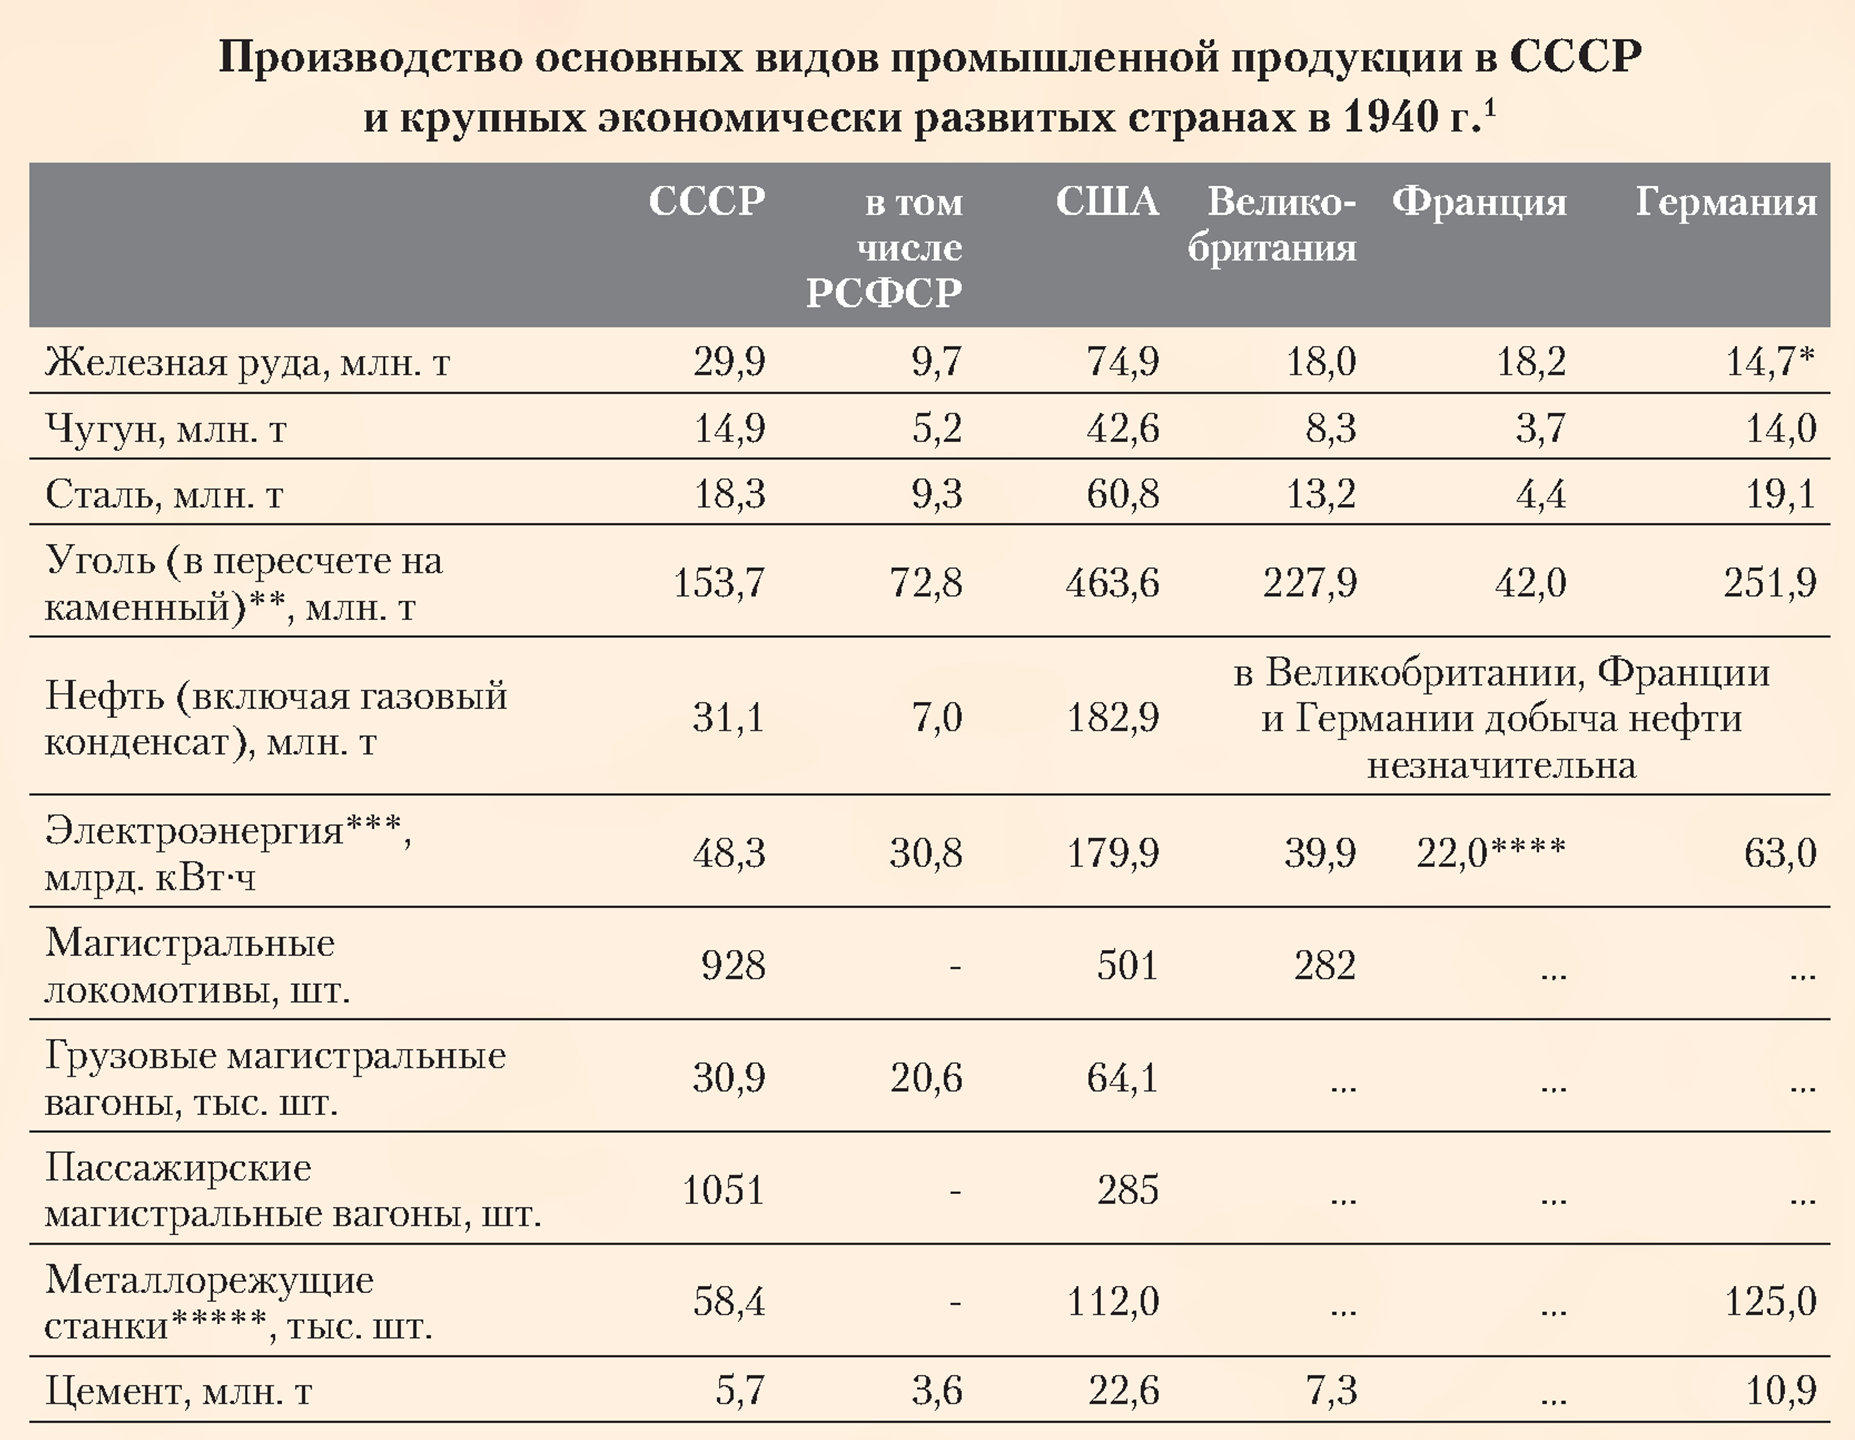 Производство основных видов промышленной продукции в СССР и крупных экономически развитых странах в 1940 году